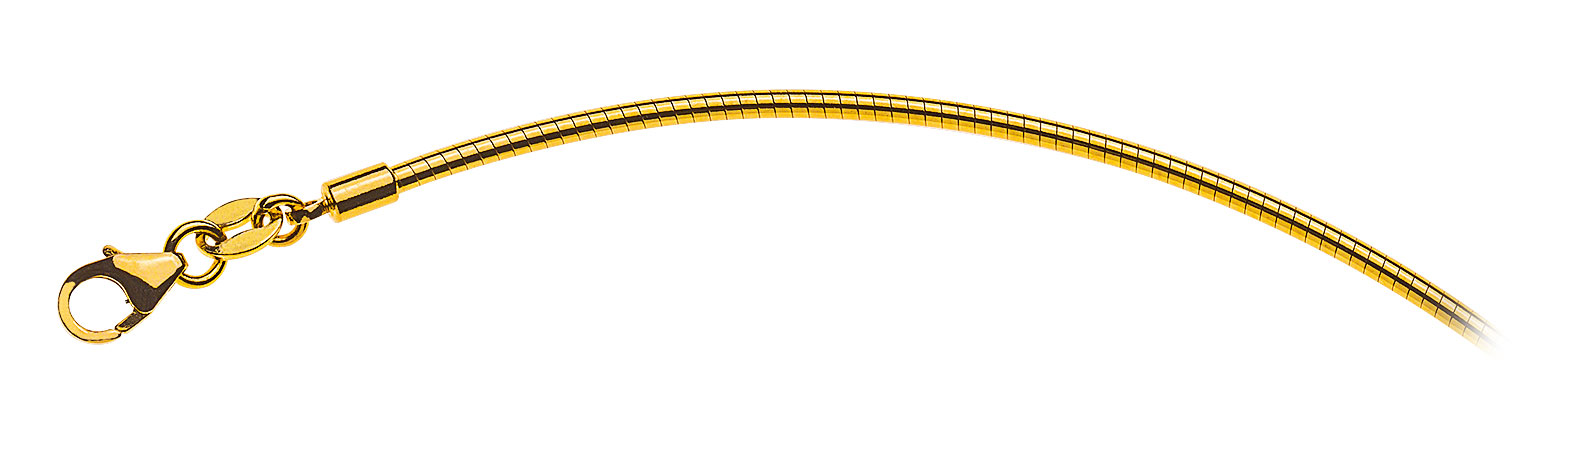 AURONOS Prestige Halskette Gelbgold 18K Omegakette 42cm 1.8mm